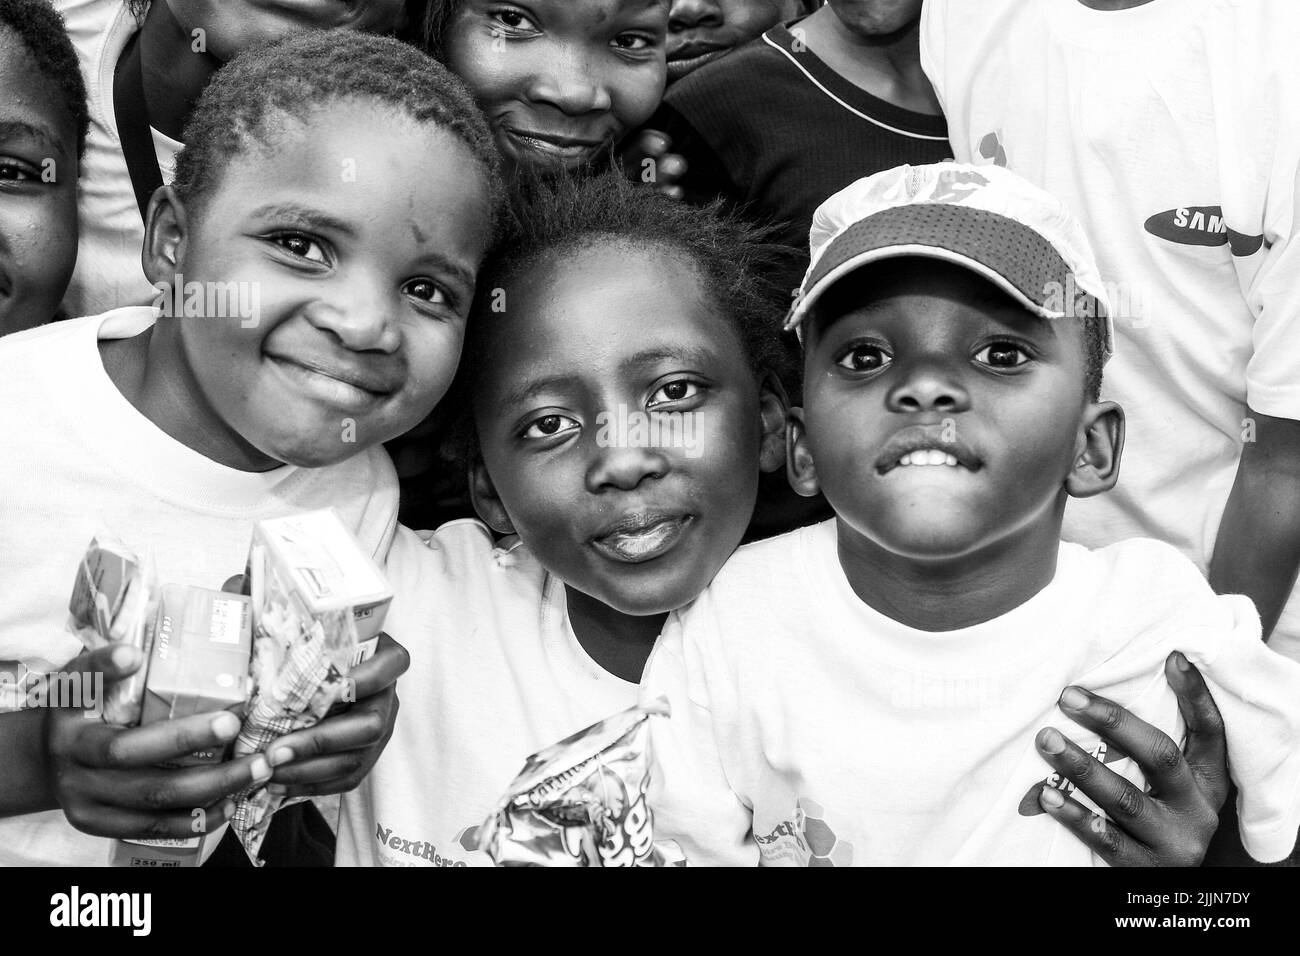 Un ritratto in scala di grigi dei bambini africani che si posano sul campo scolastico di Johannesburg, Sudafrica Foto Stock